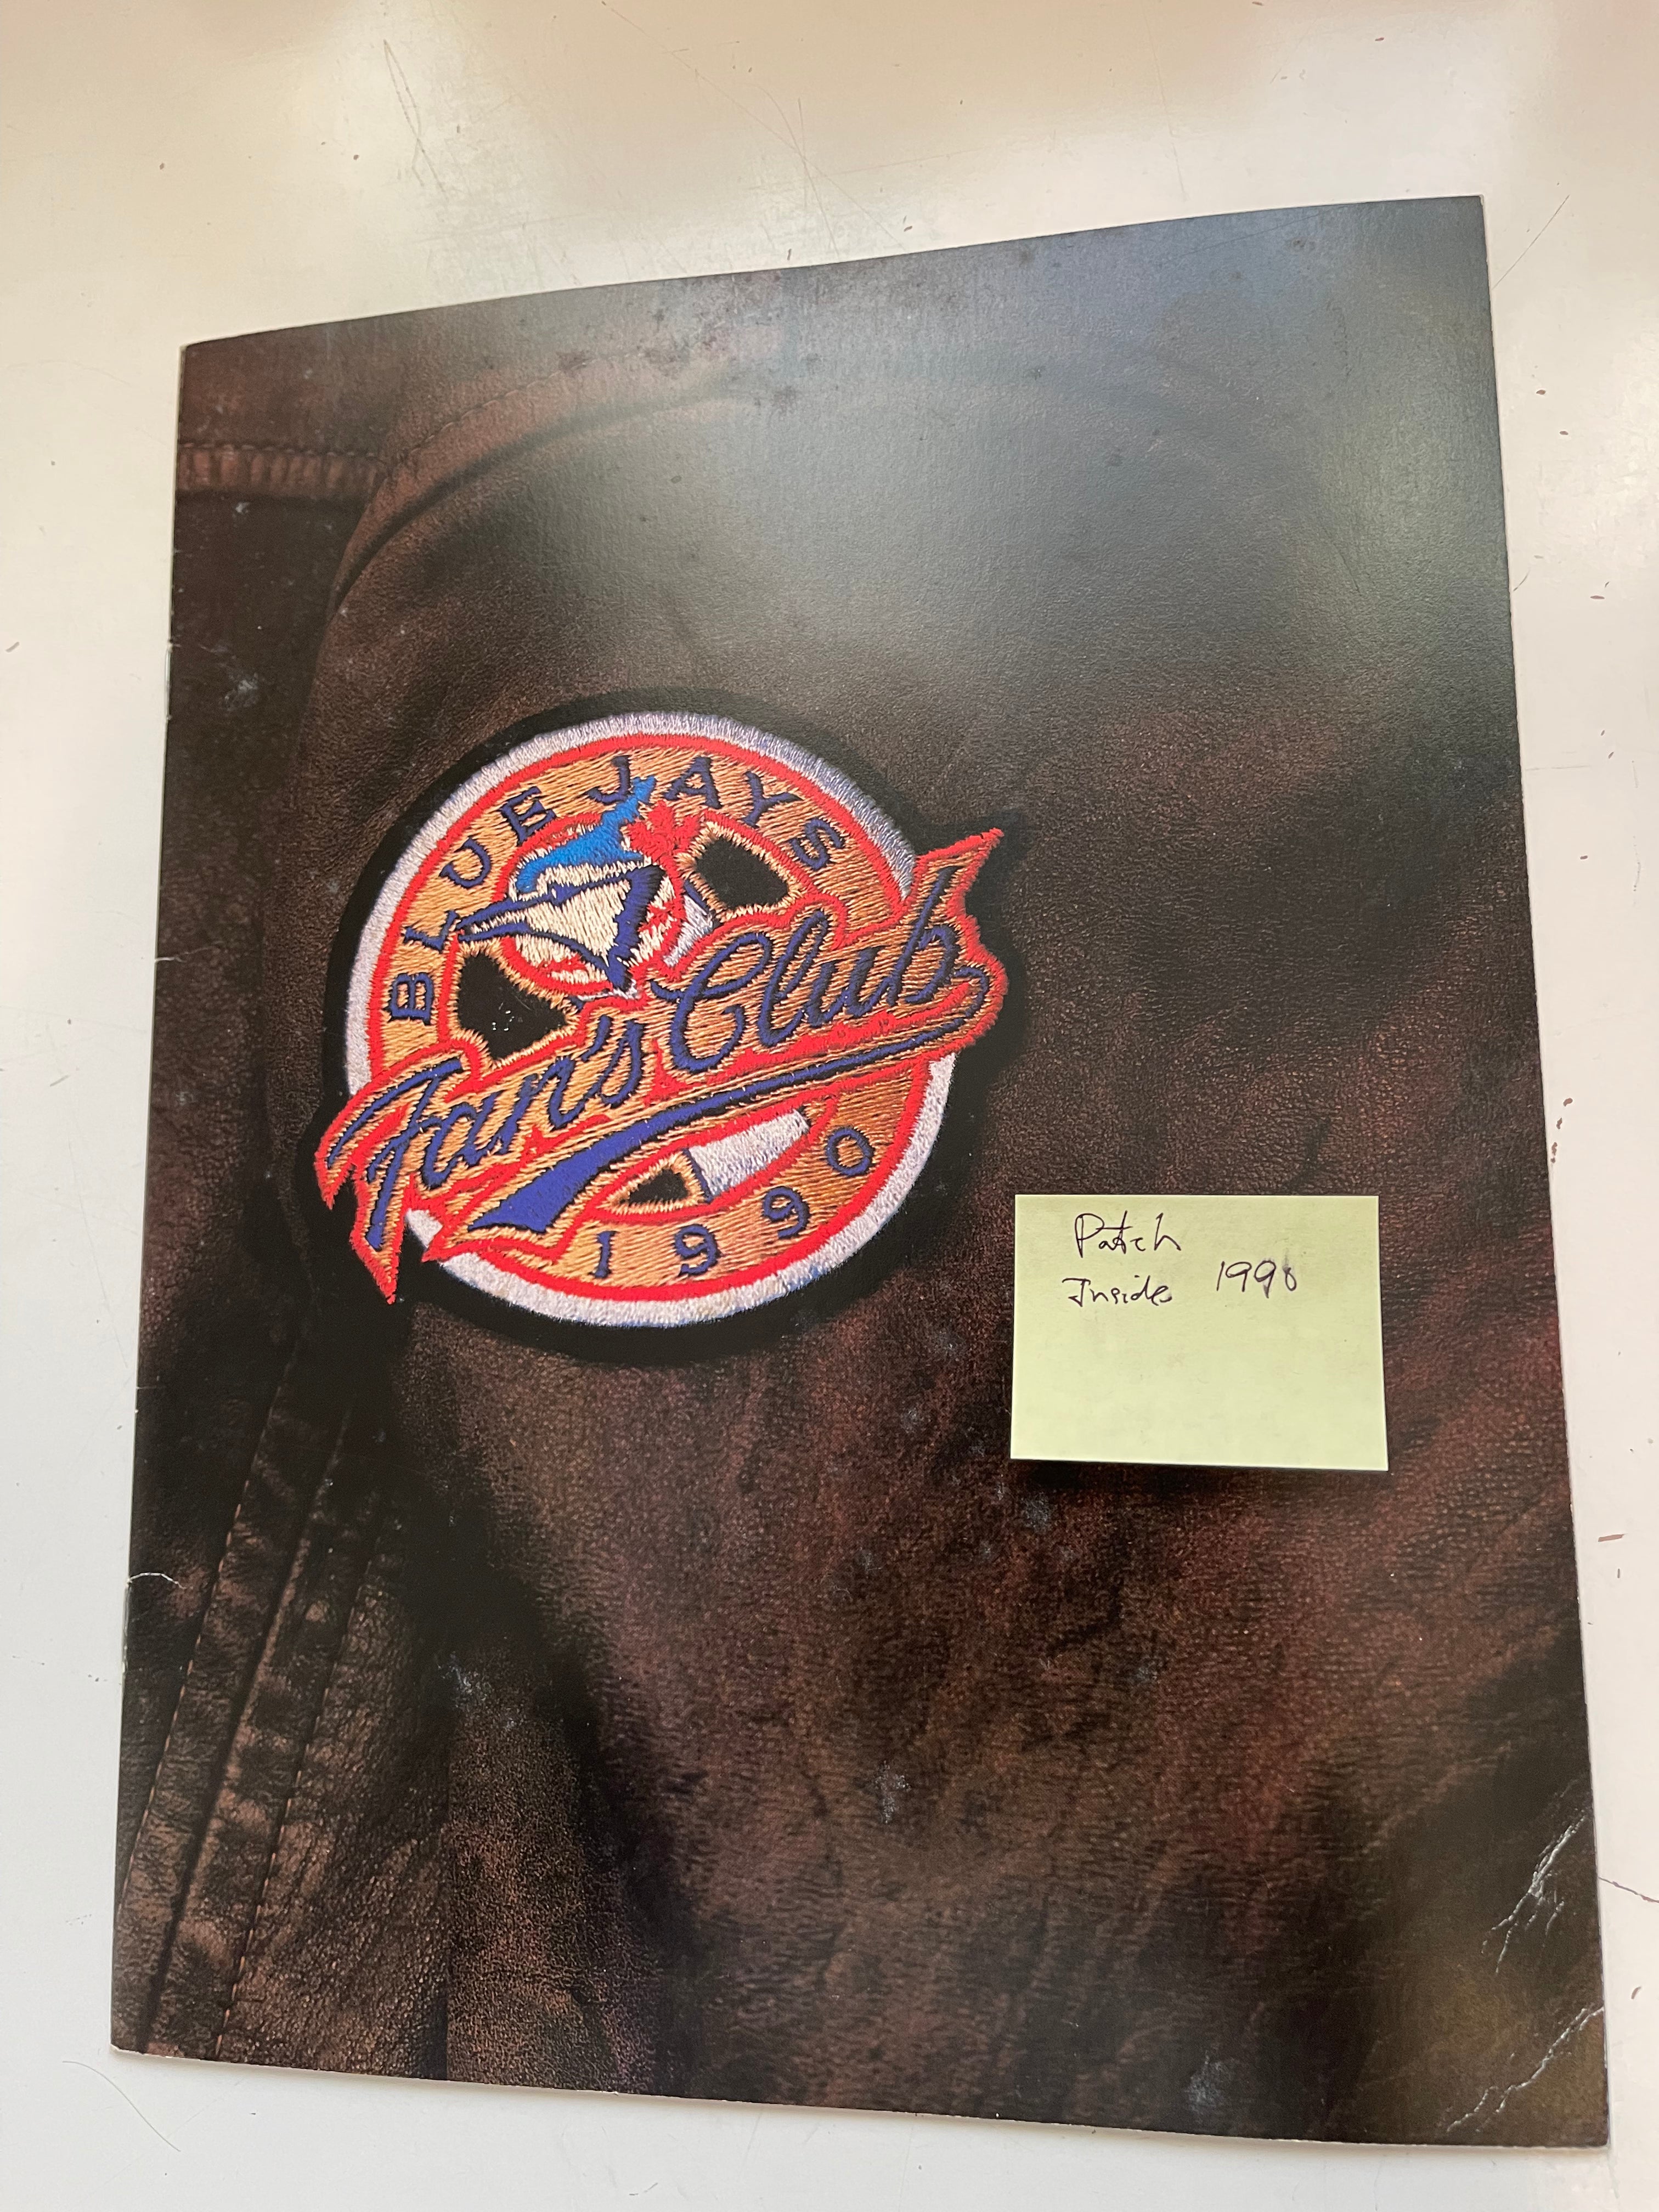 Toronto Blue jays fan club vintage folder with patch 1990